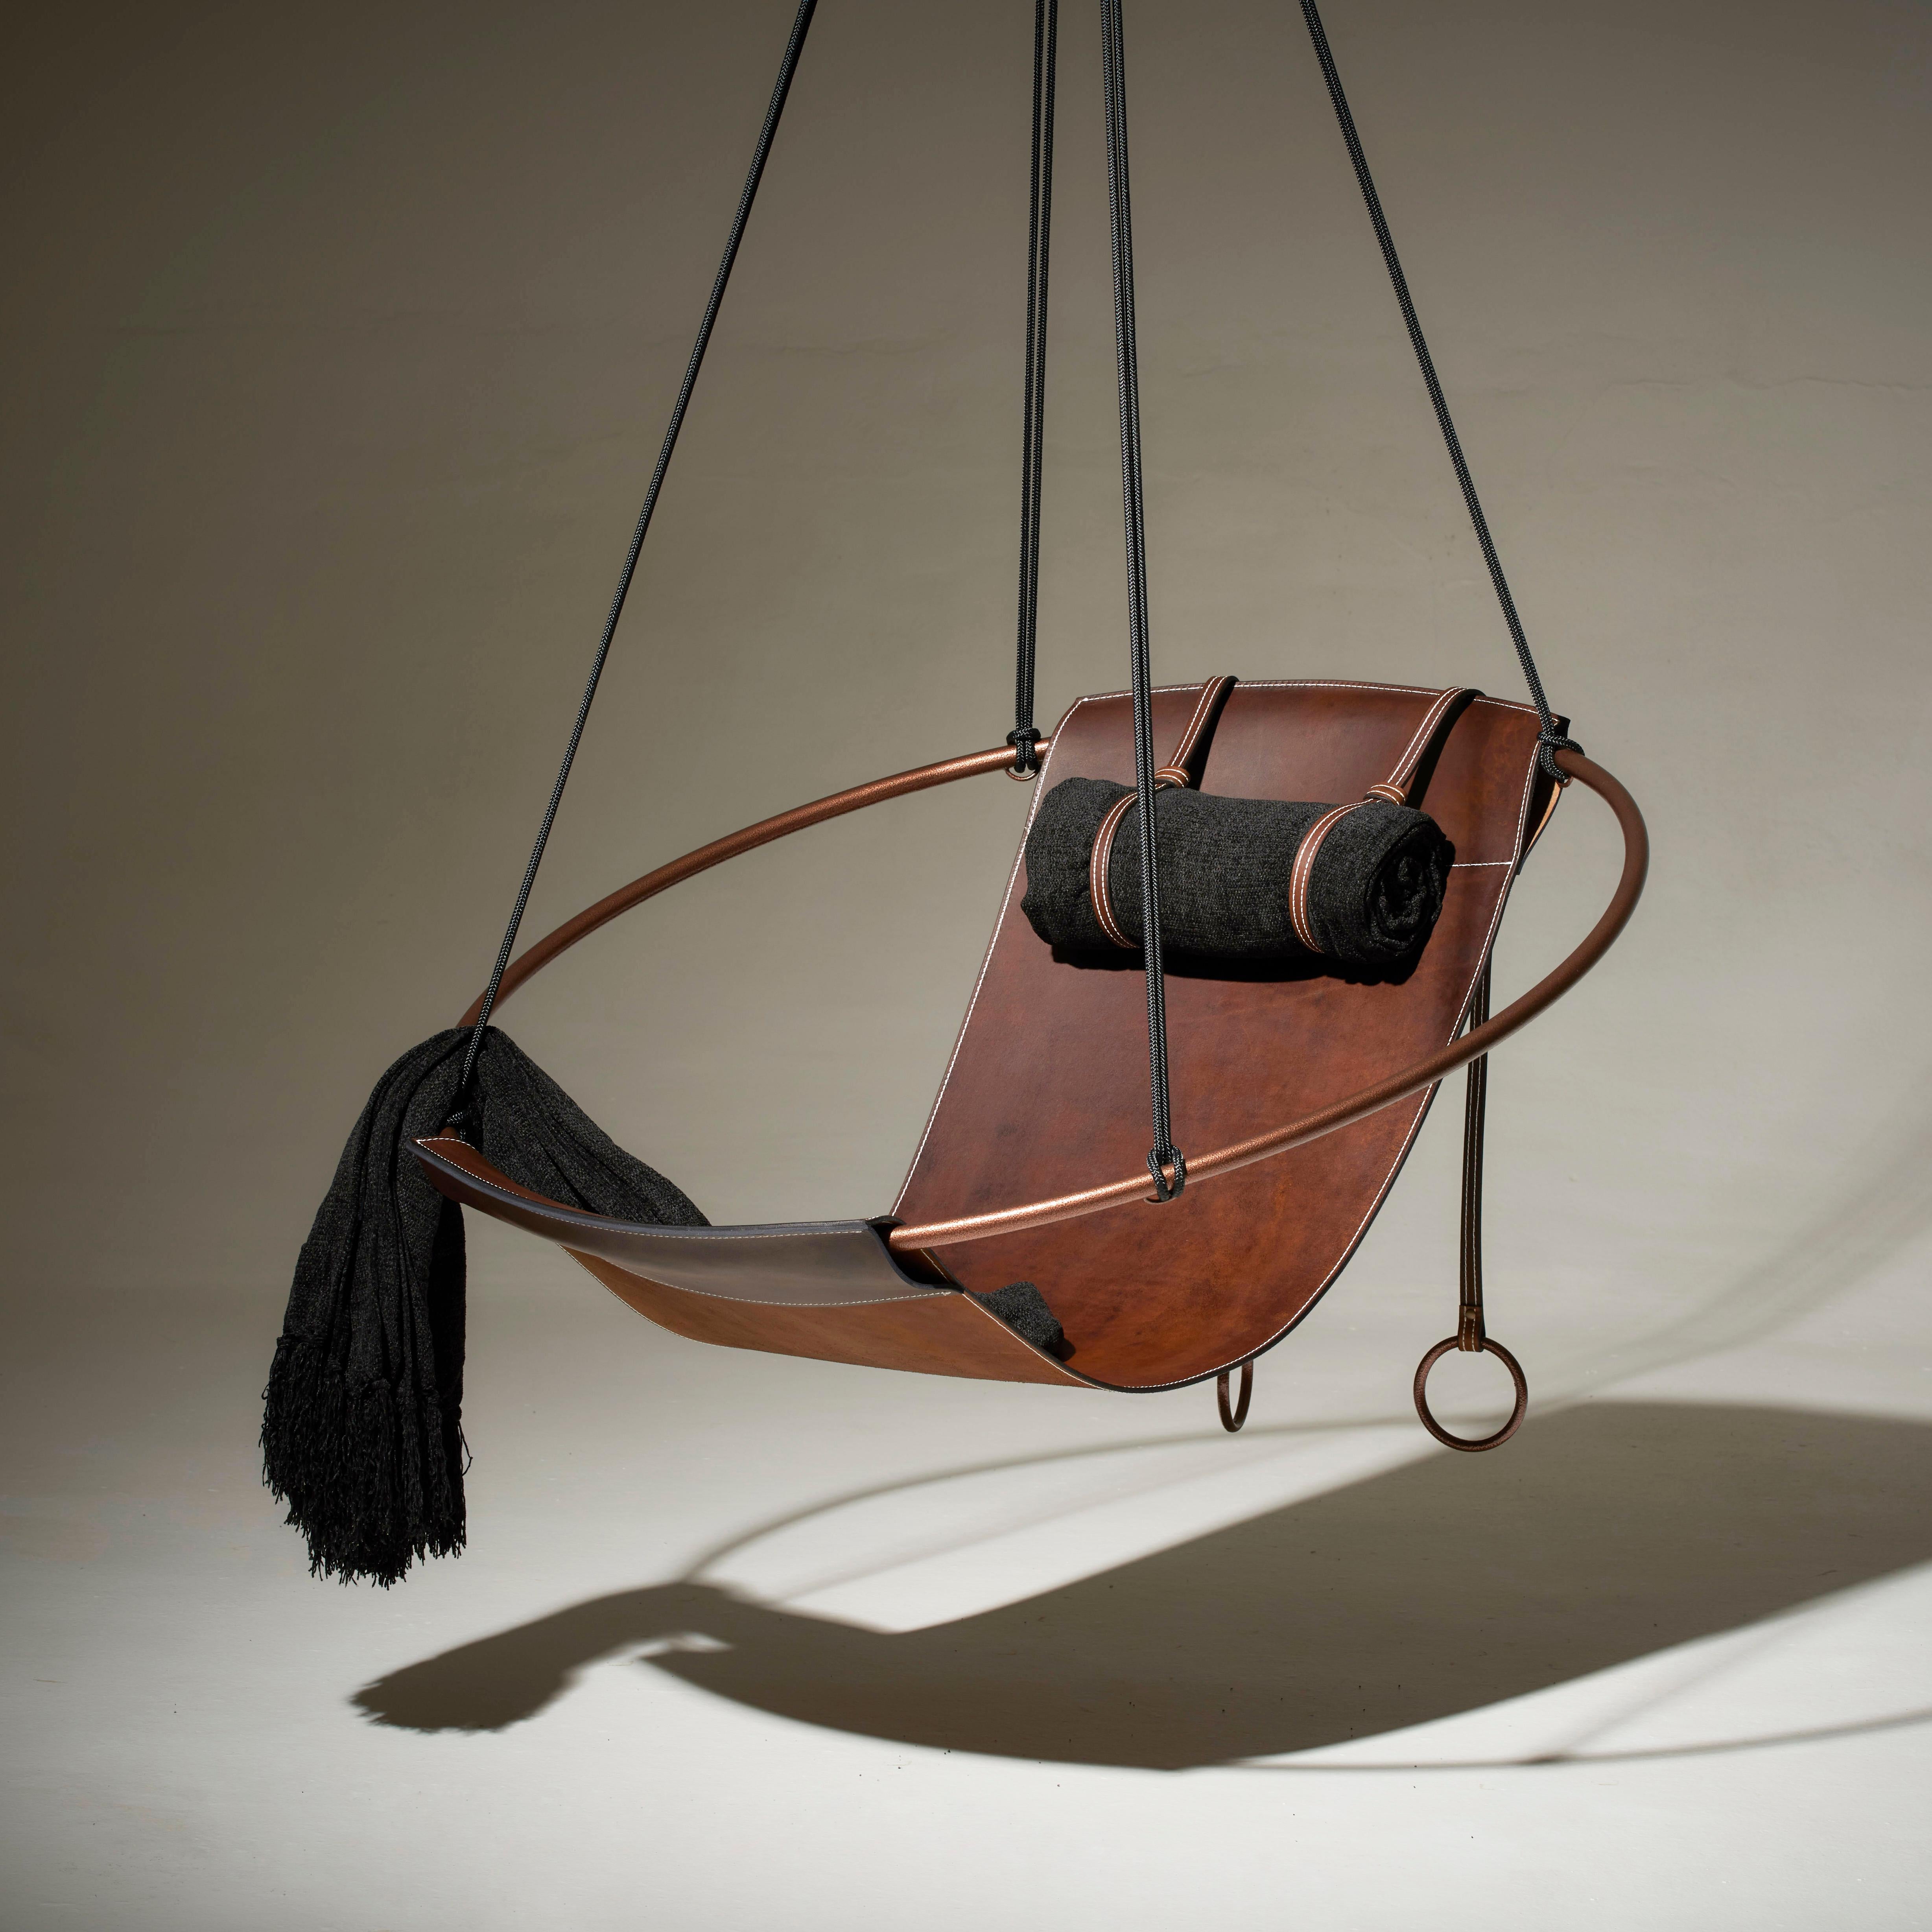 Dépouillé de tout superflu, ce fauteuil suspendu est doté d'un cadre circulaire et d'une feuille de cuir épais naturel suspendue à l'intérieur, pour créer une expérience élégante, sexy et très confortable. Les lignes épurées et la légèreté de cette